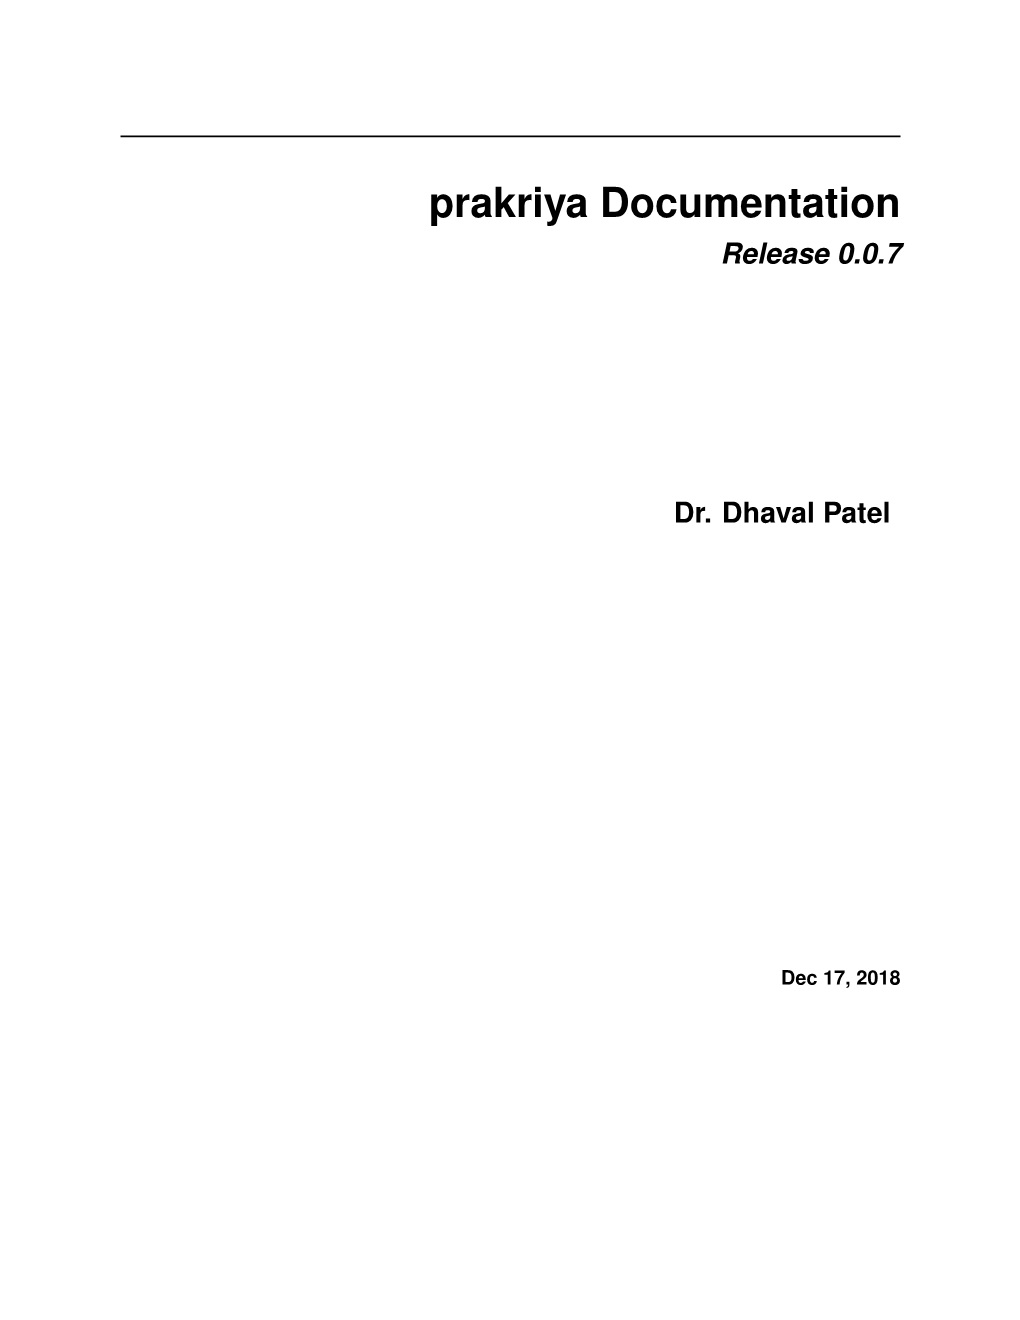 Prakriya Documentation Release 0.0.7